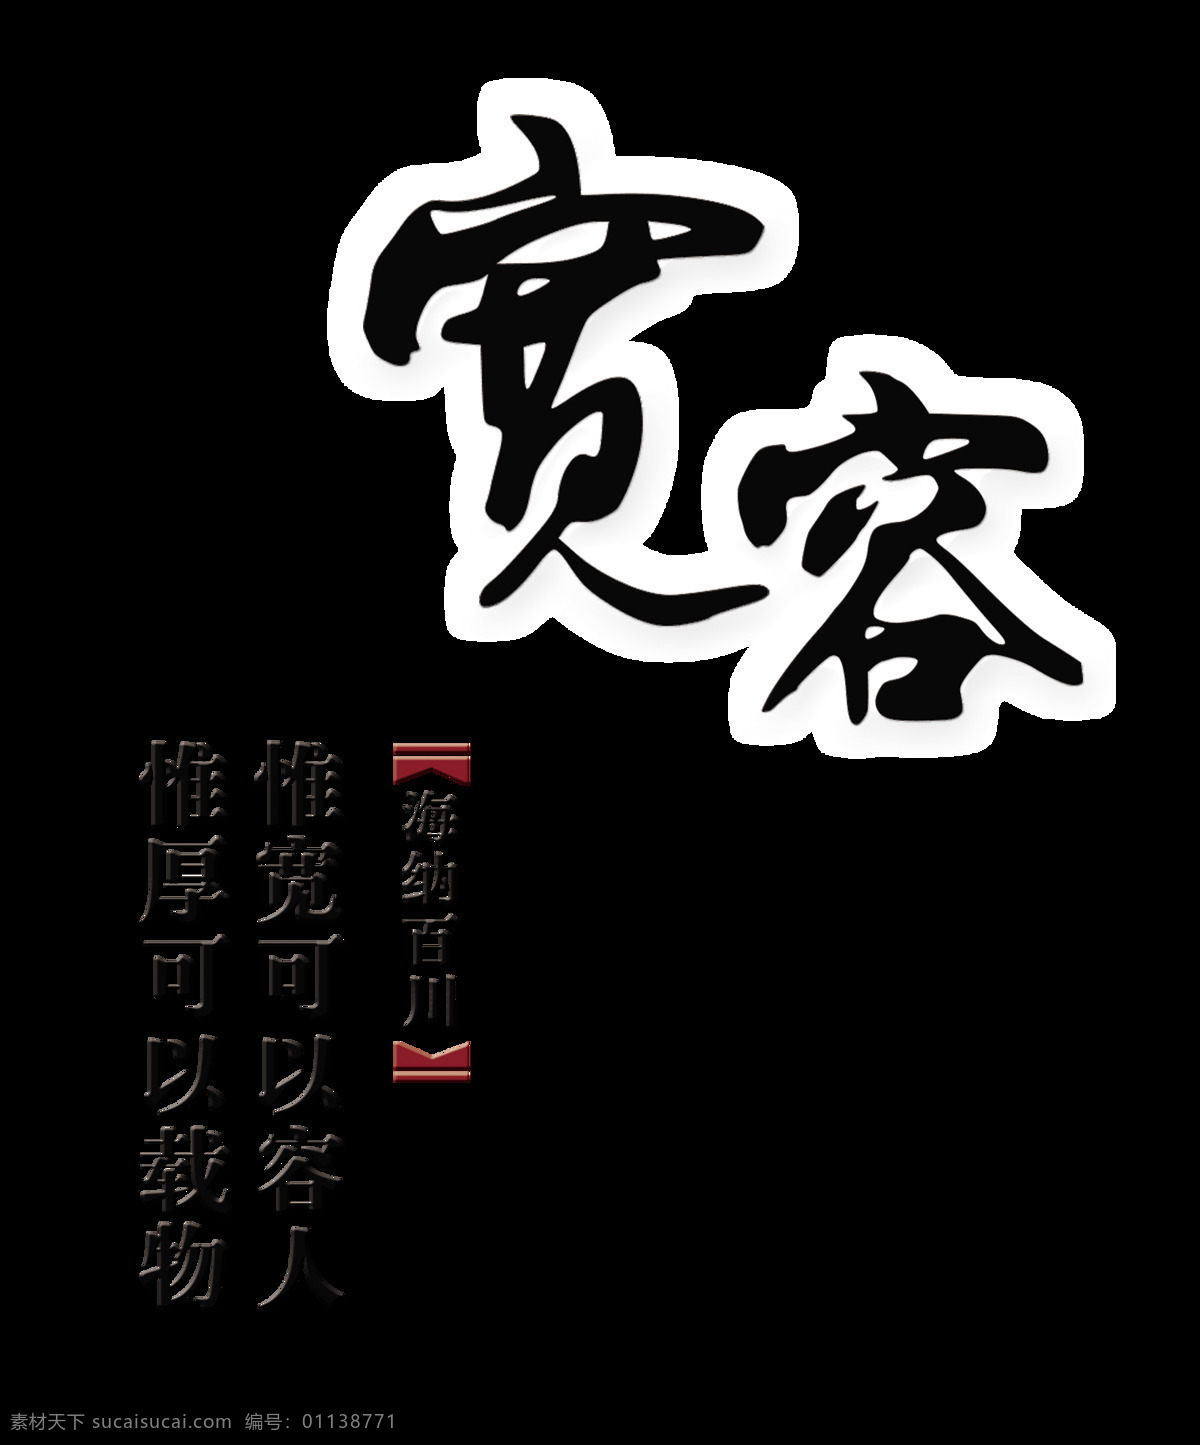 宽容 海纳百川 文化建设 艺术 字 文化 字体 元素 包容 厚德载物 艺术字 海报